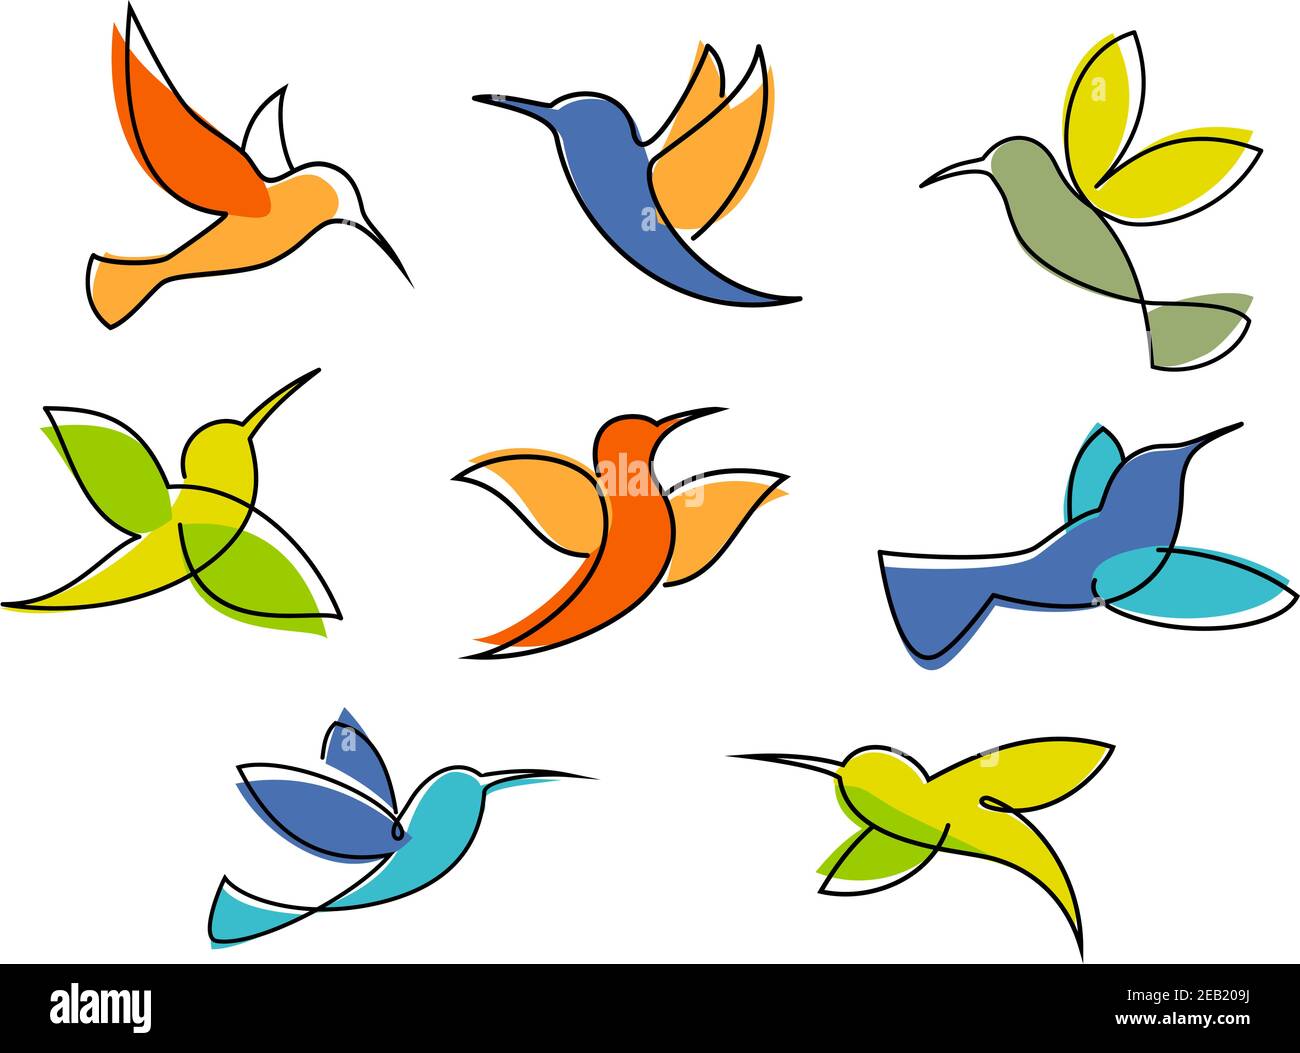 Symboles d'colibris colorés dans différentes poses pour le logo d'entreprise ou emblème en forme d'esquisse sur un fond blanc Illustration de Vecteur